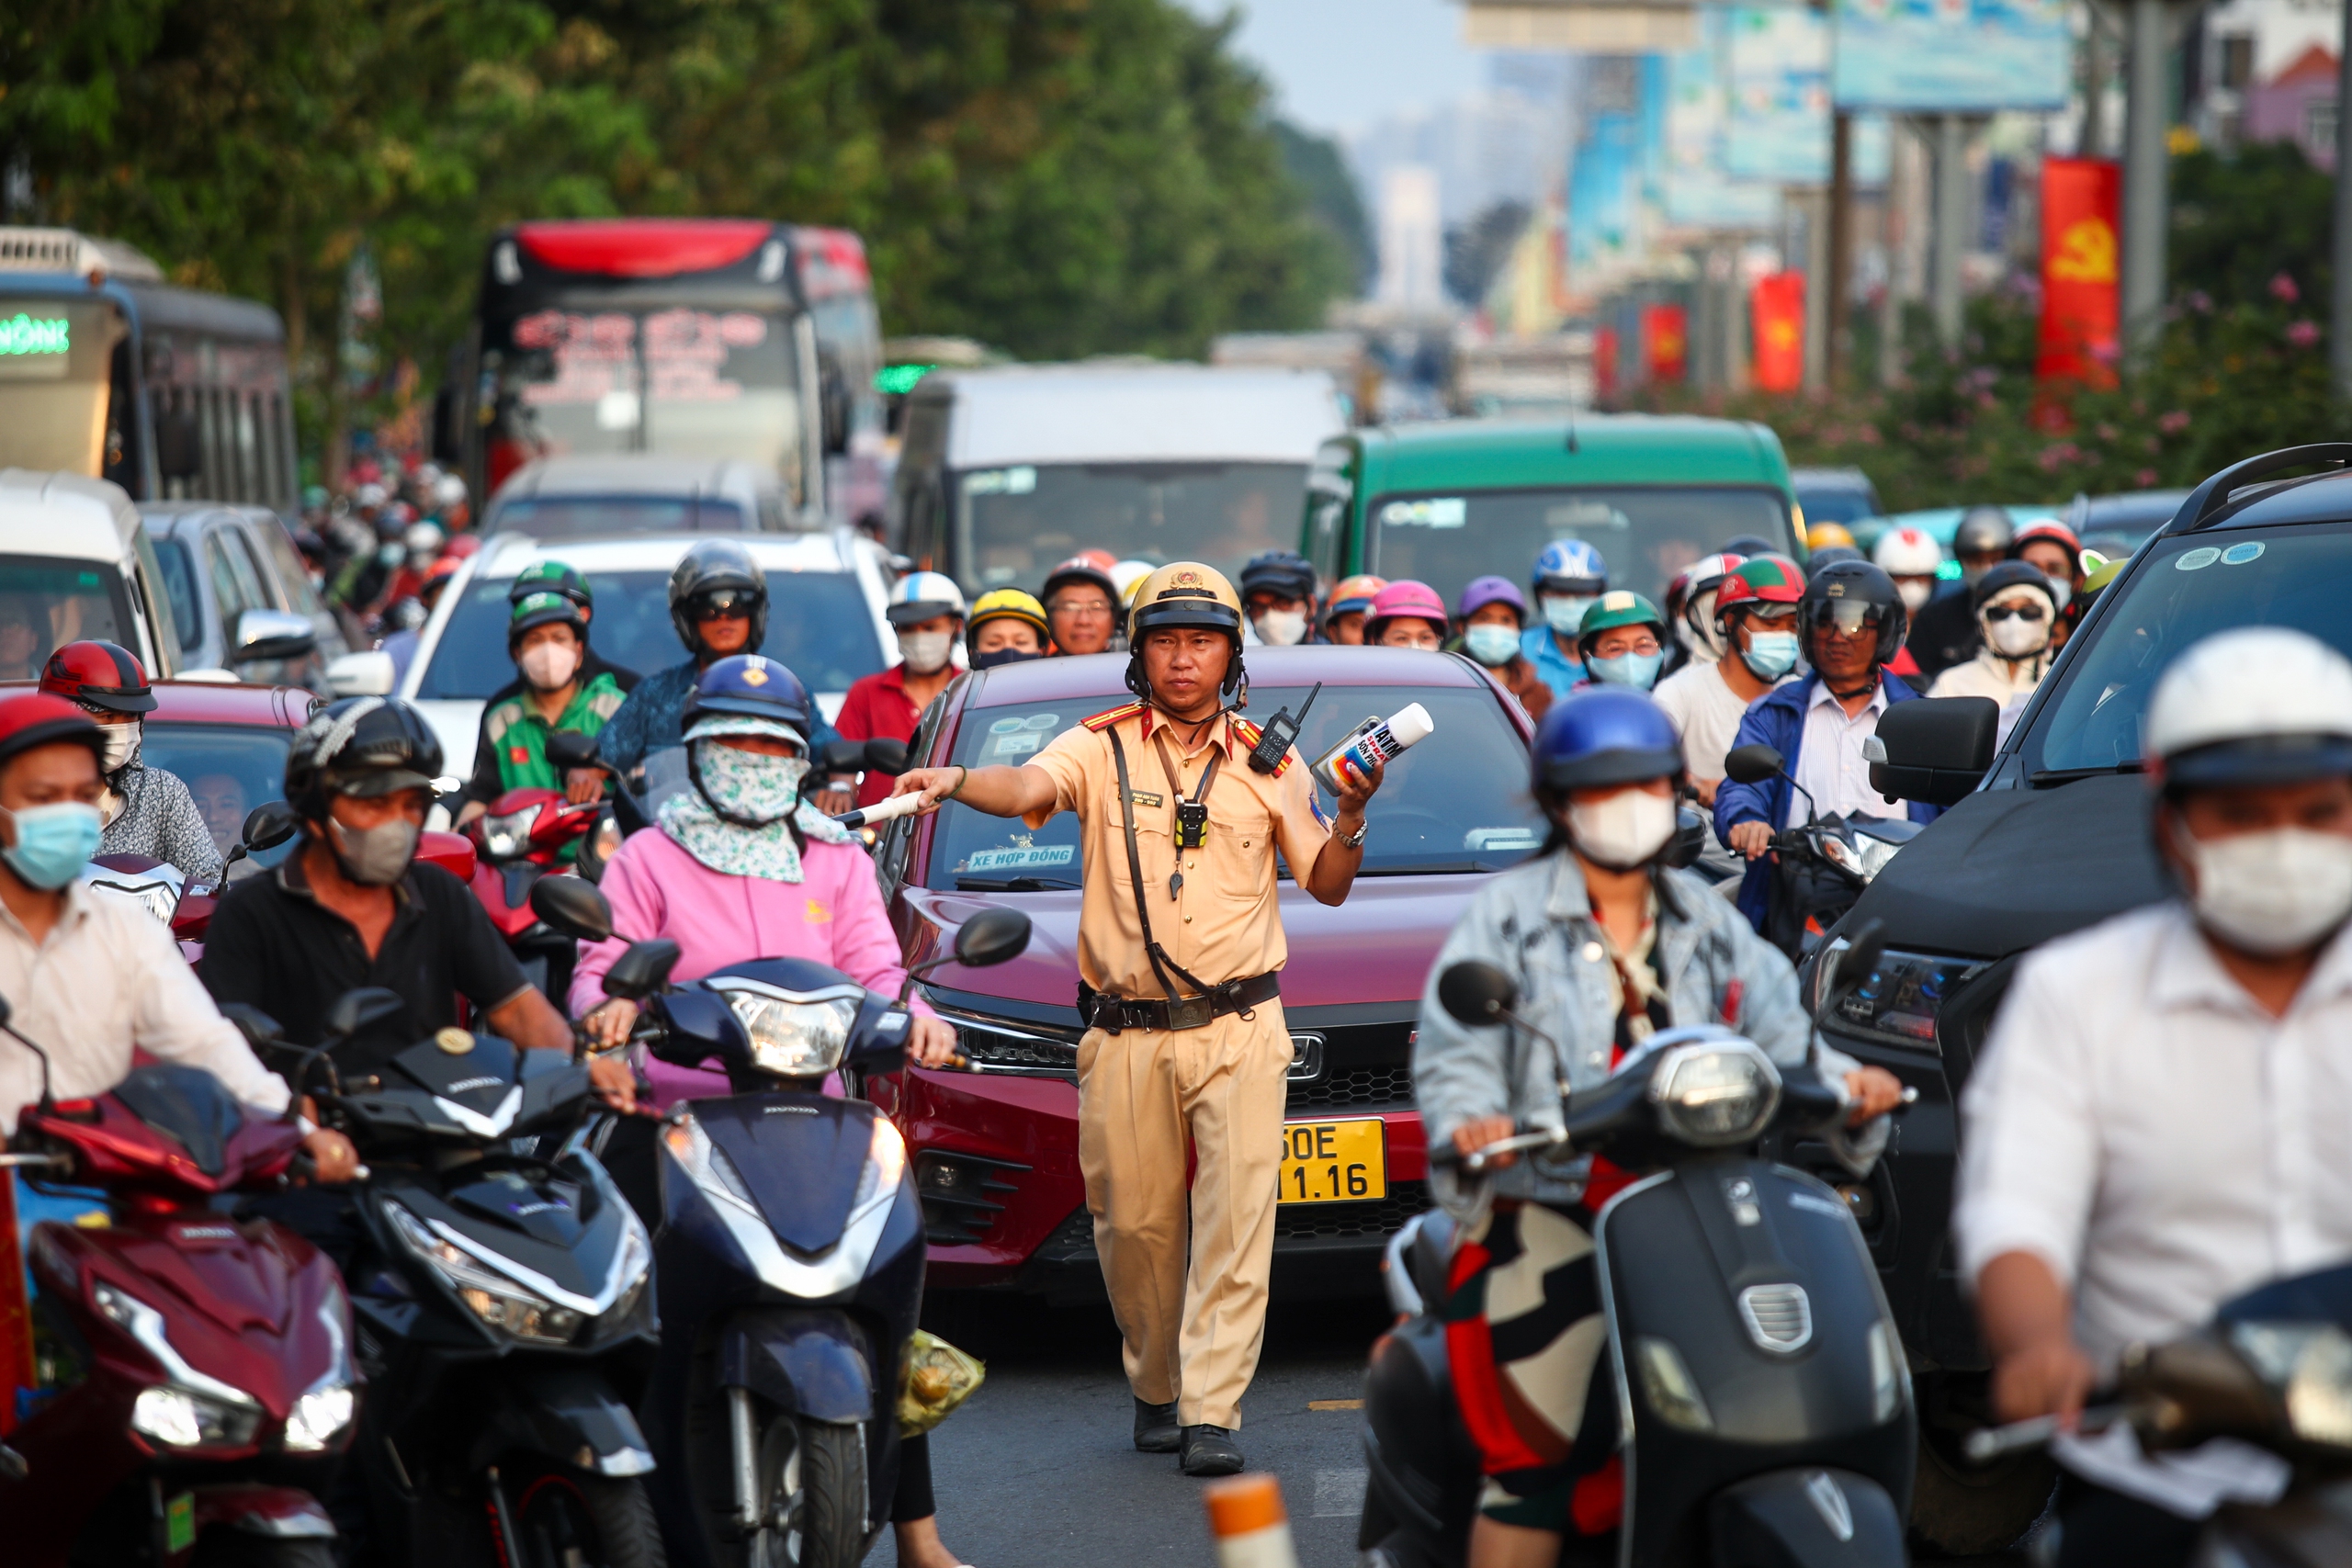 26 tháng chạp: Cửa ngõ sân bay Tân Sơn Nhất đông nghẹt xe cộ, có lúc kẹt cứng- Ảnh 15.